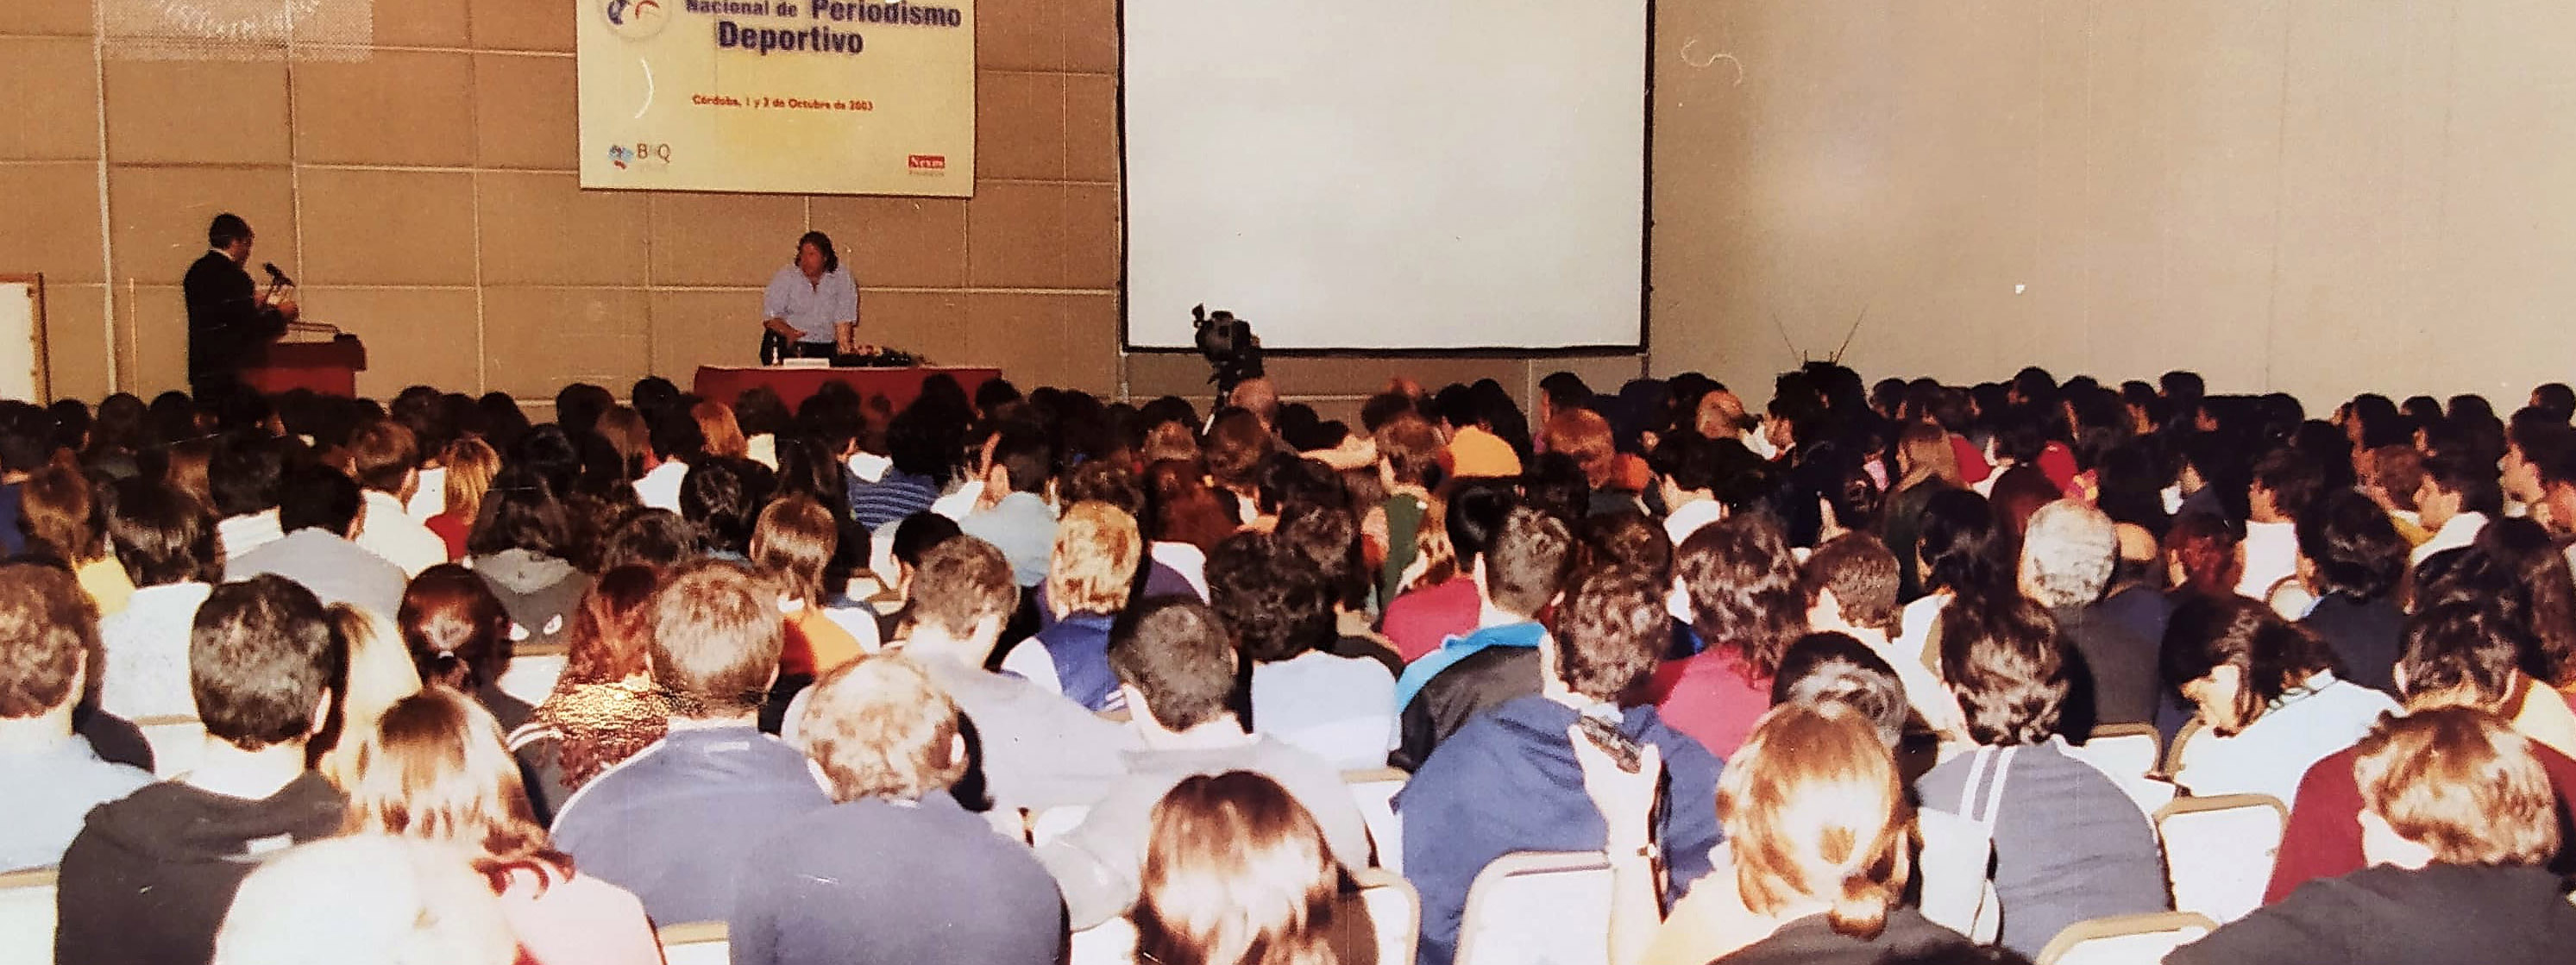 ES HISTORIA: A 20 años del 1° Congreso Nacional de Periodismo Deportivo en Córdoba